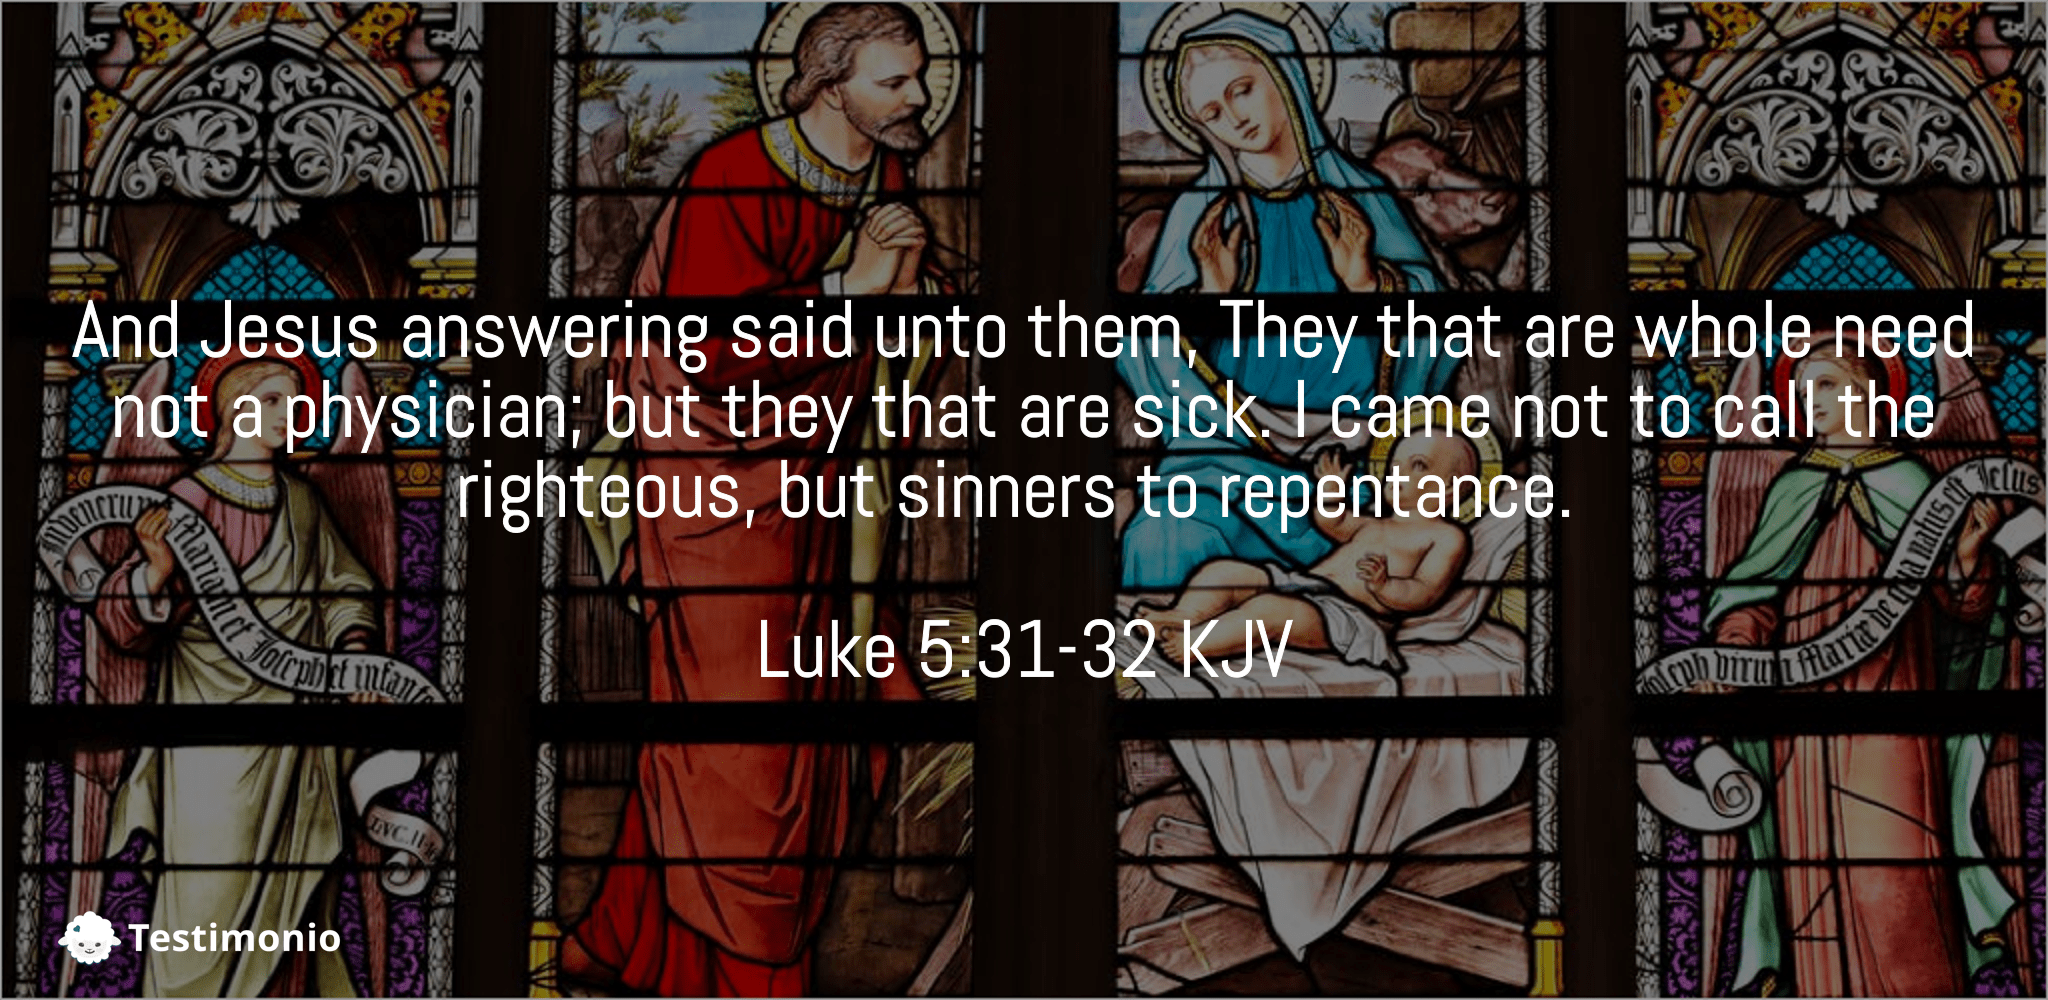 Luke 5:31-32